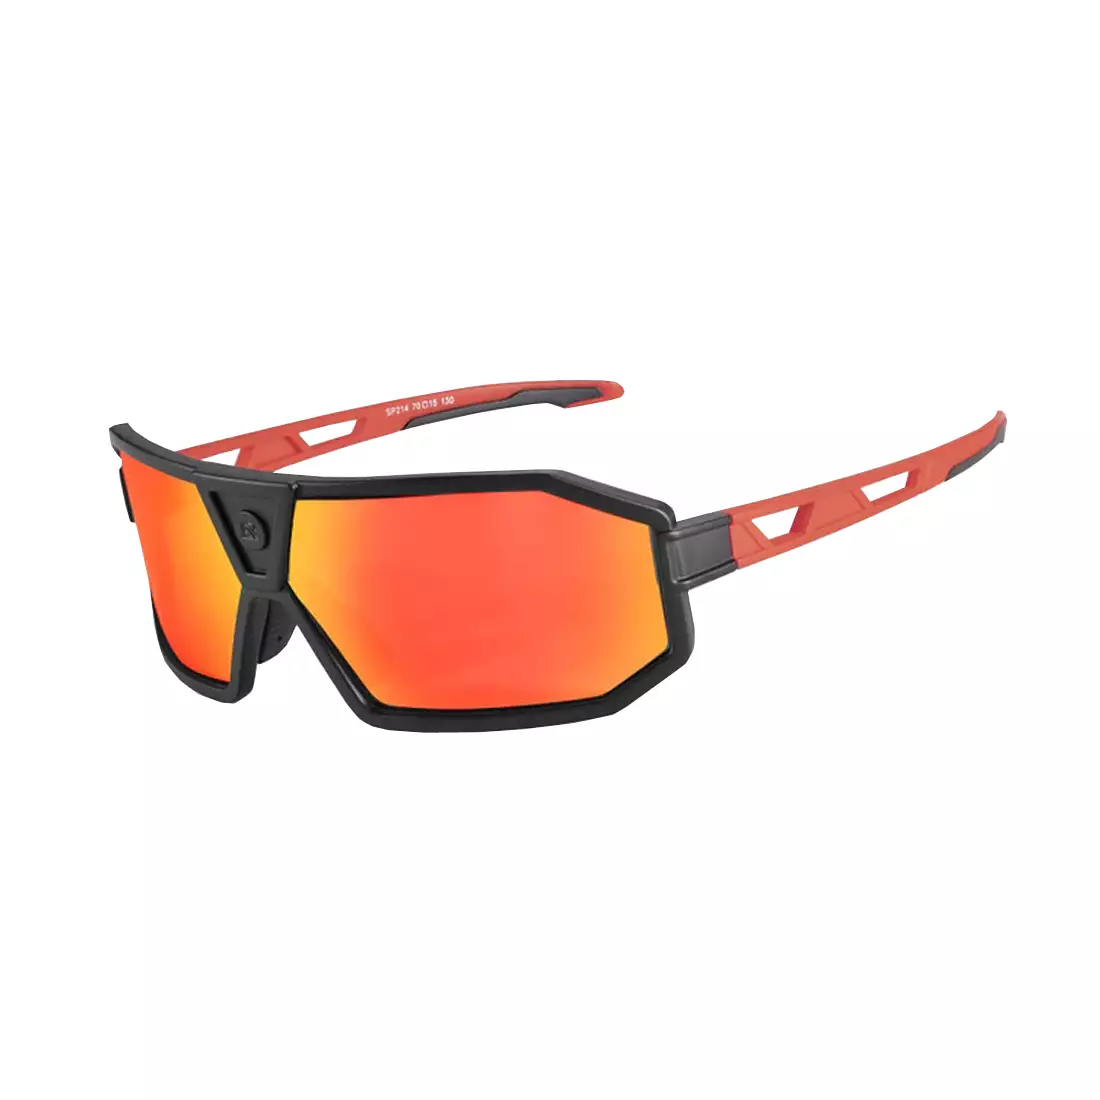 Rockbros SP214BK Fahrrad / Sportbrille mit polarisiertem schwarz-rot